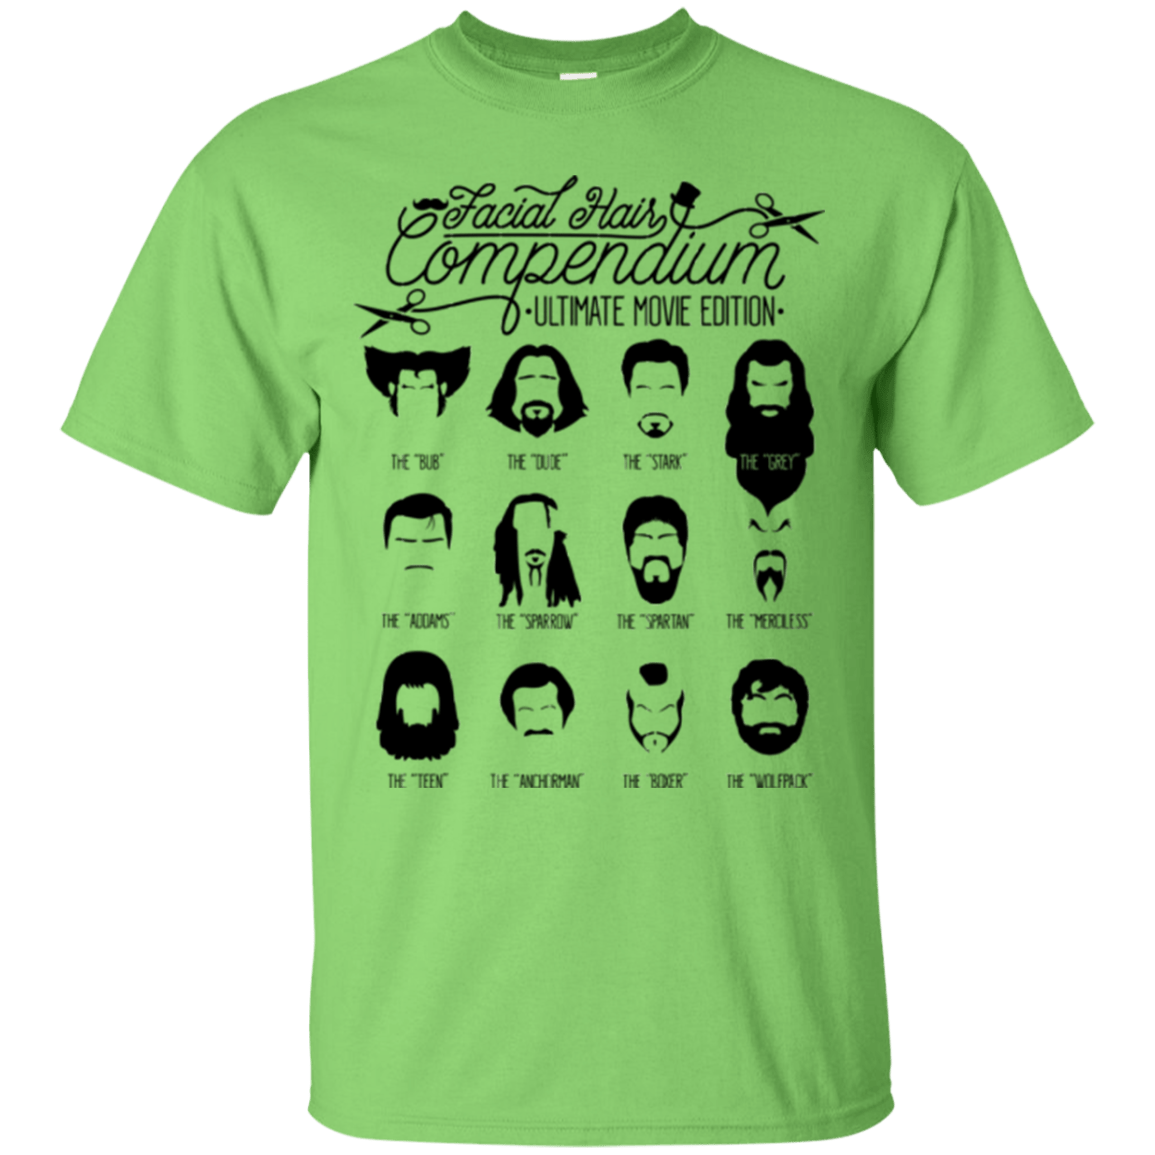 The Movie Facial Hair Compendium T-Shirt